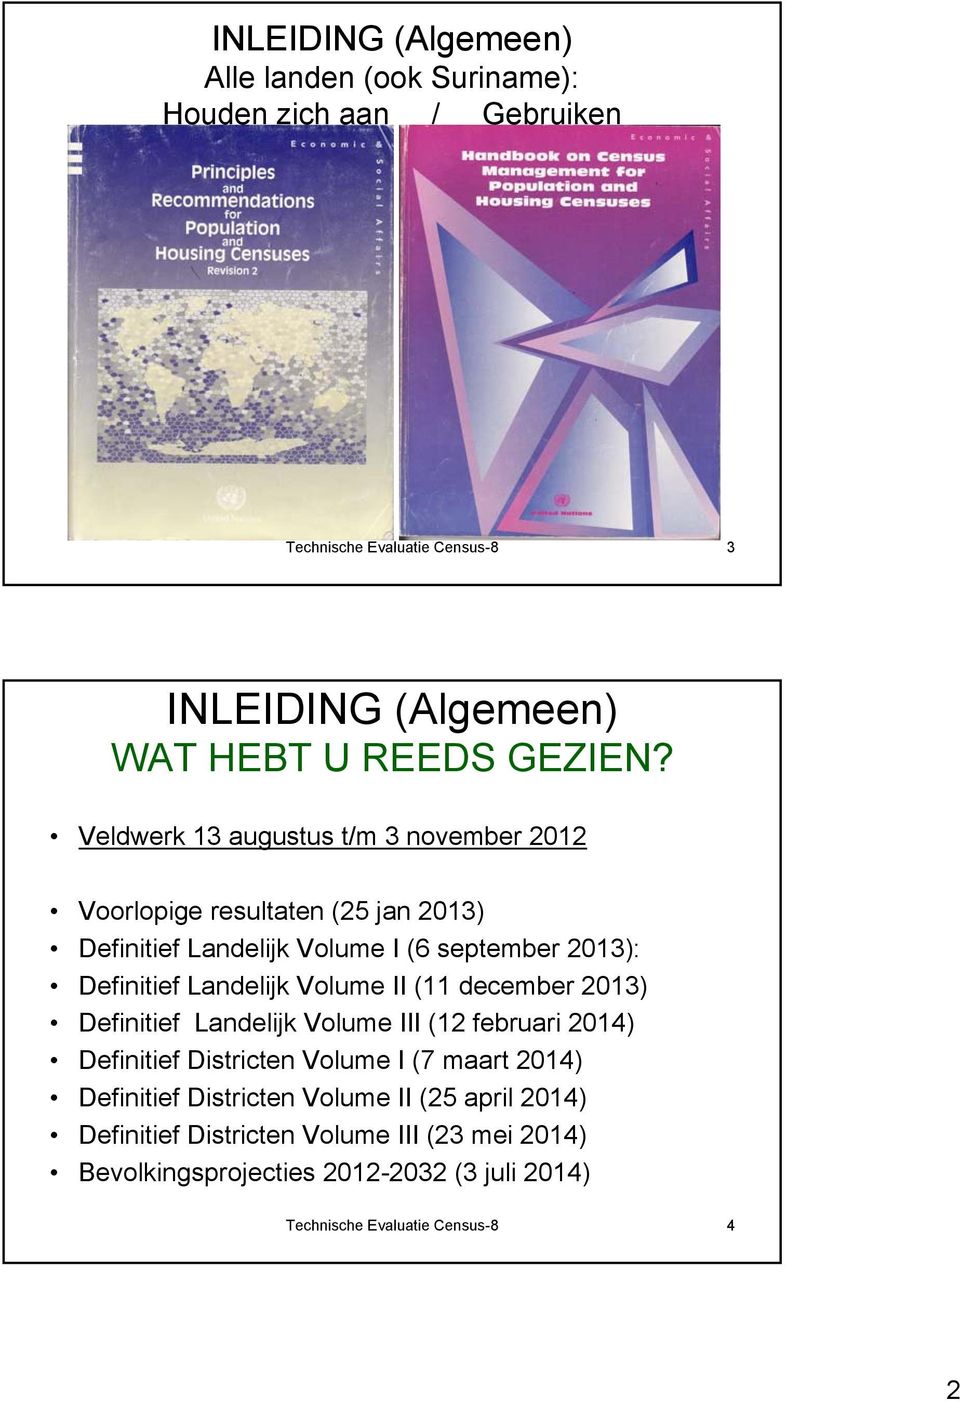 Veldwerk 13 augustus t/m 3 november 2012 Voorlopige resultaten (25 jan 2013) Definitief Landelijk Volume I (6 september 2013): Definitief Landelijk